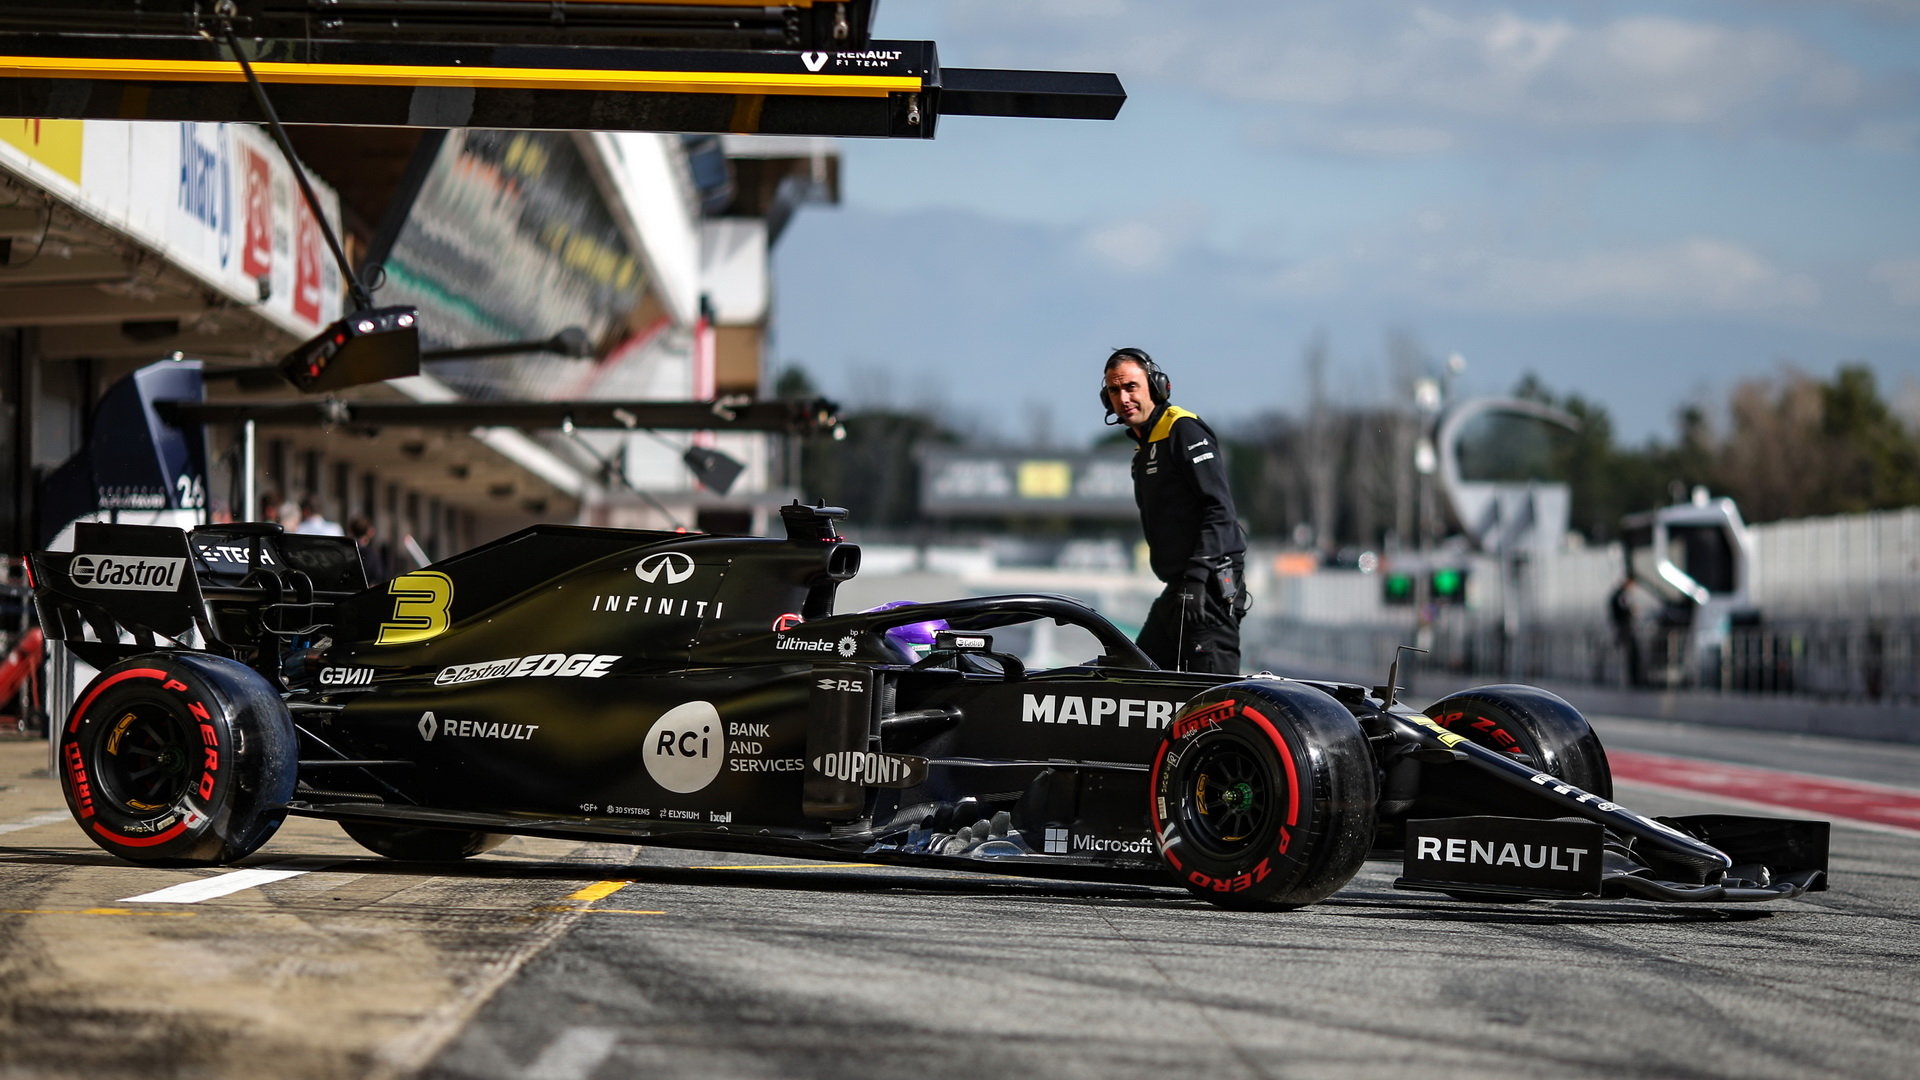 Daniel Ricciardo v rámci třetího dne druhých předsezonních testů v Barceloně